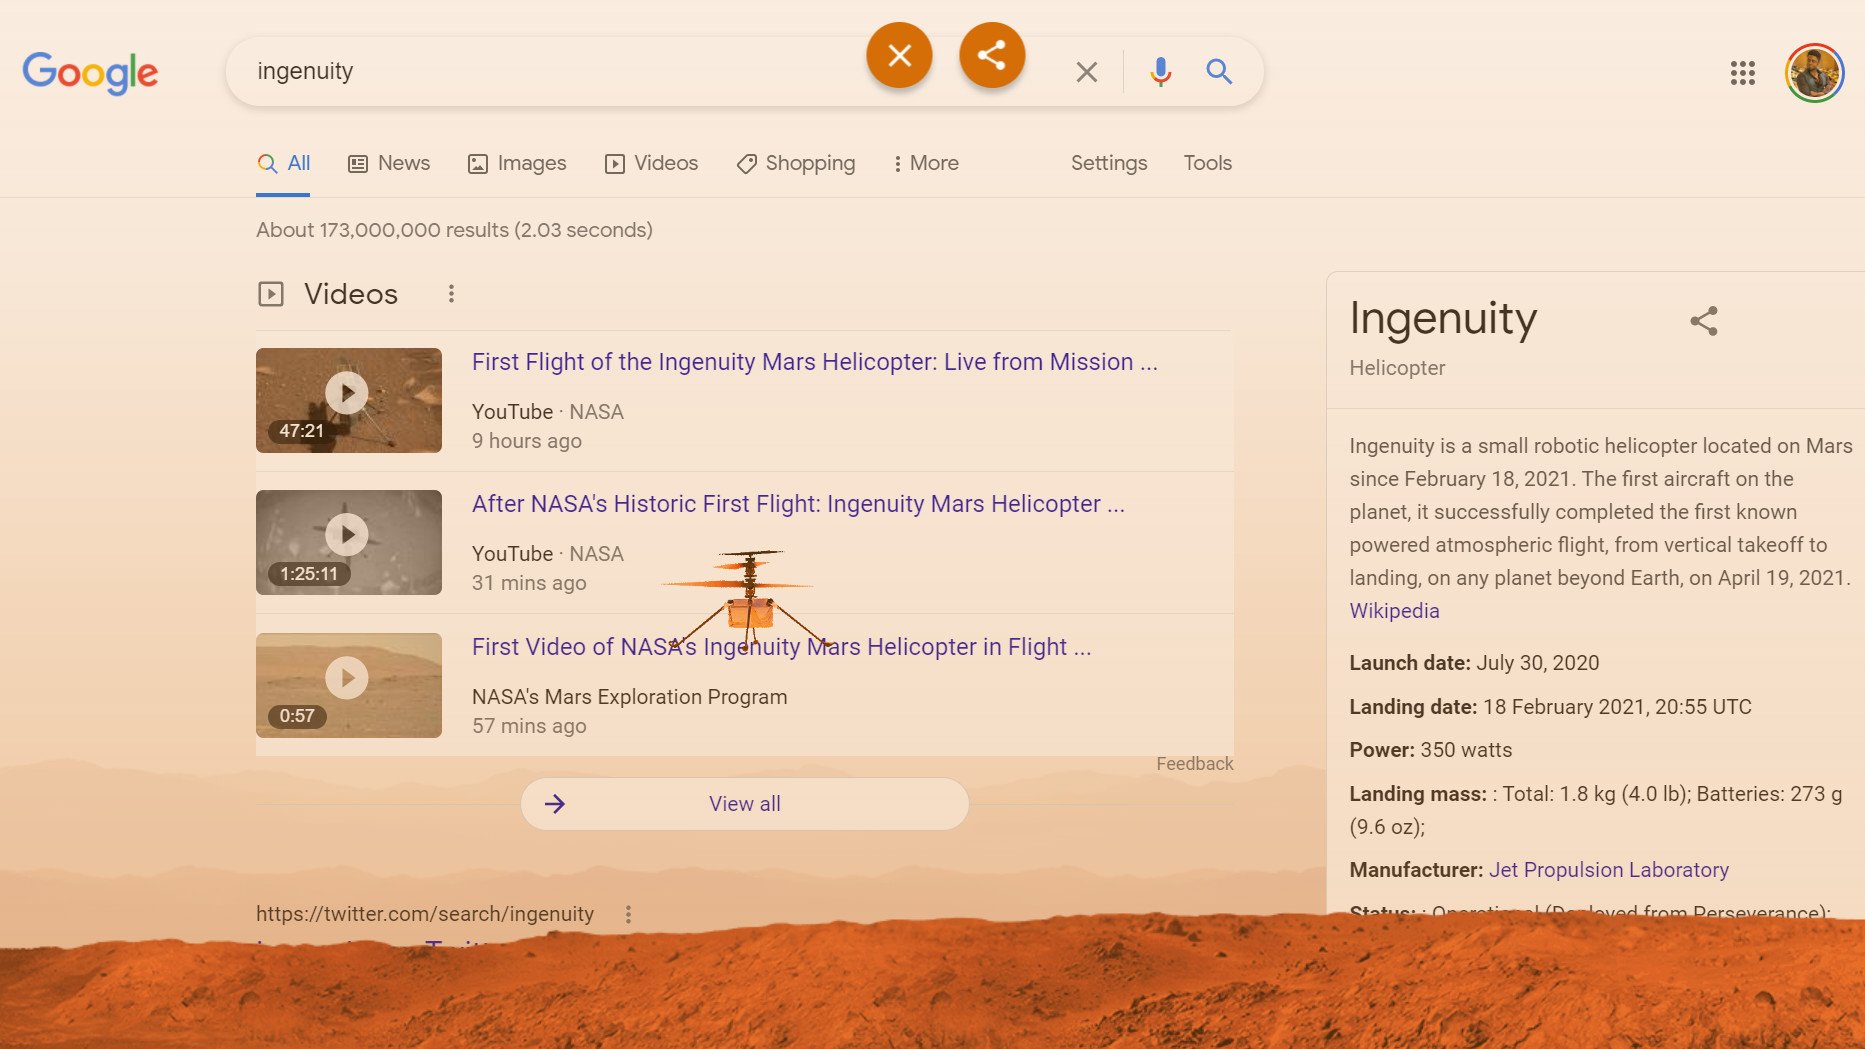 Google Search Desktop Mars Ingenuity